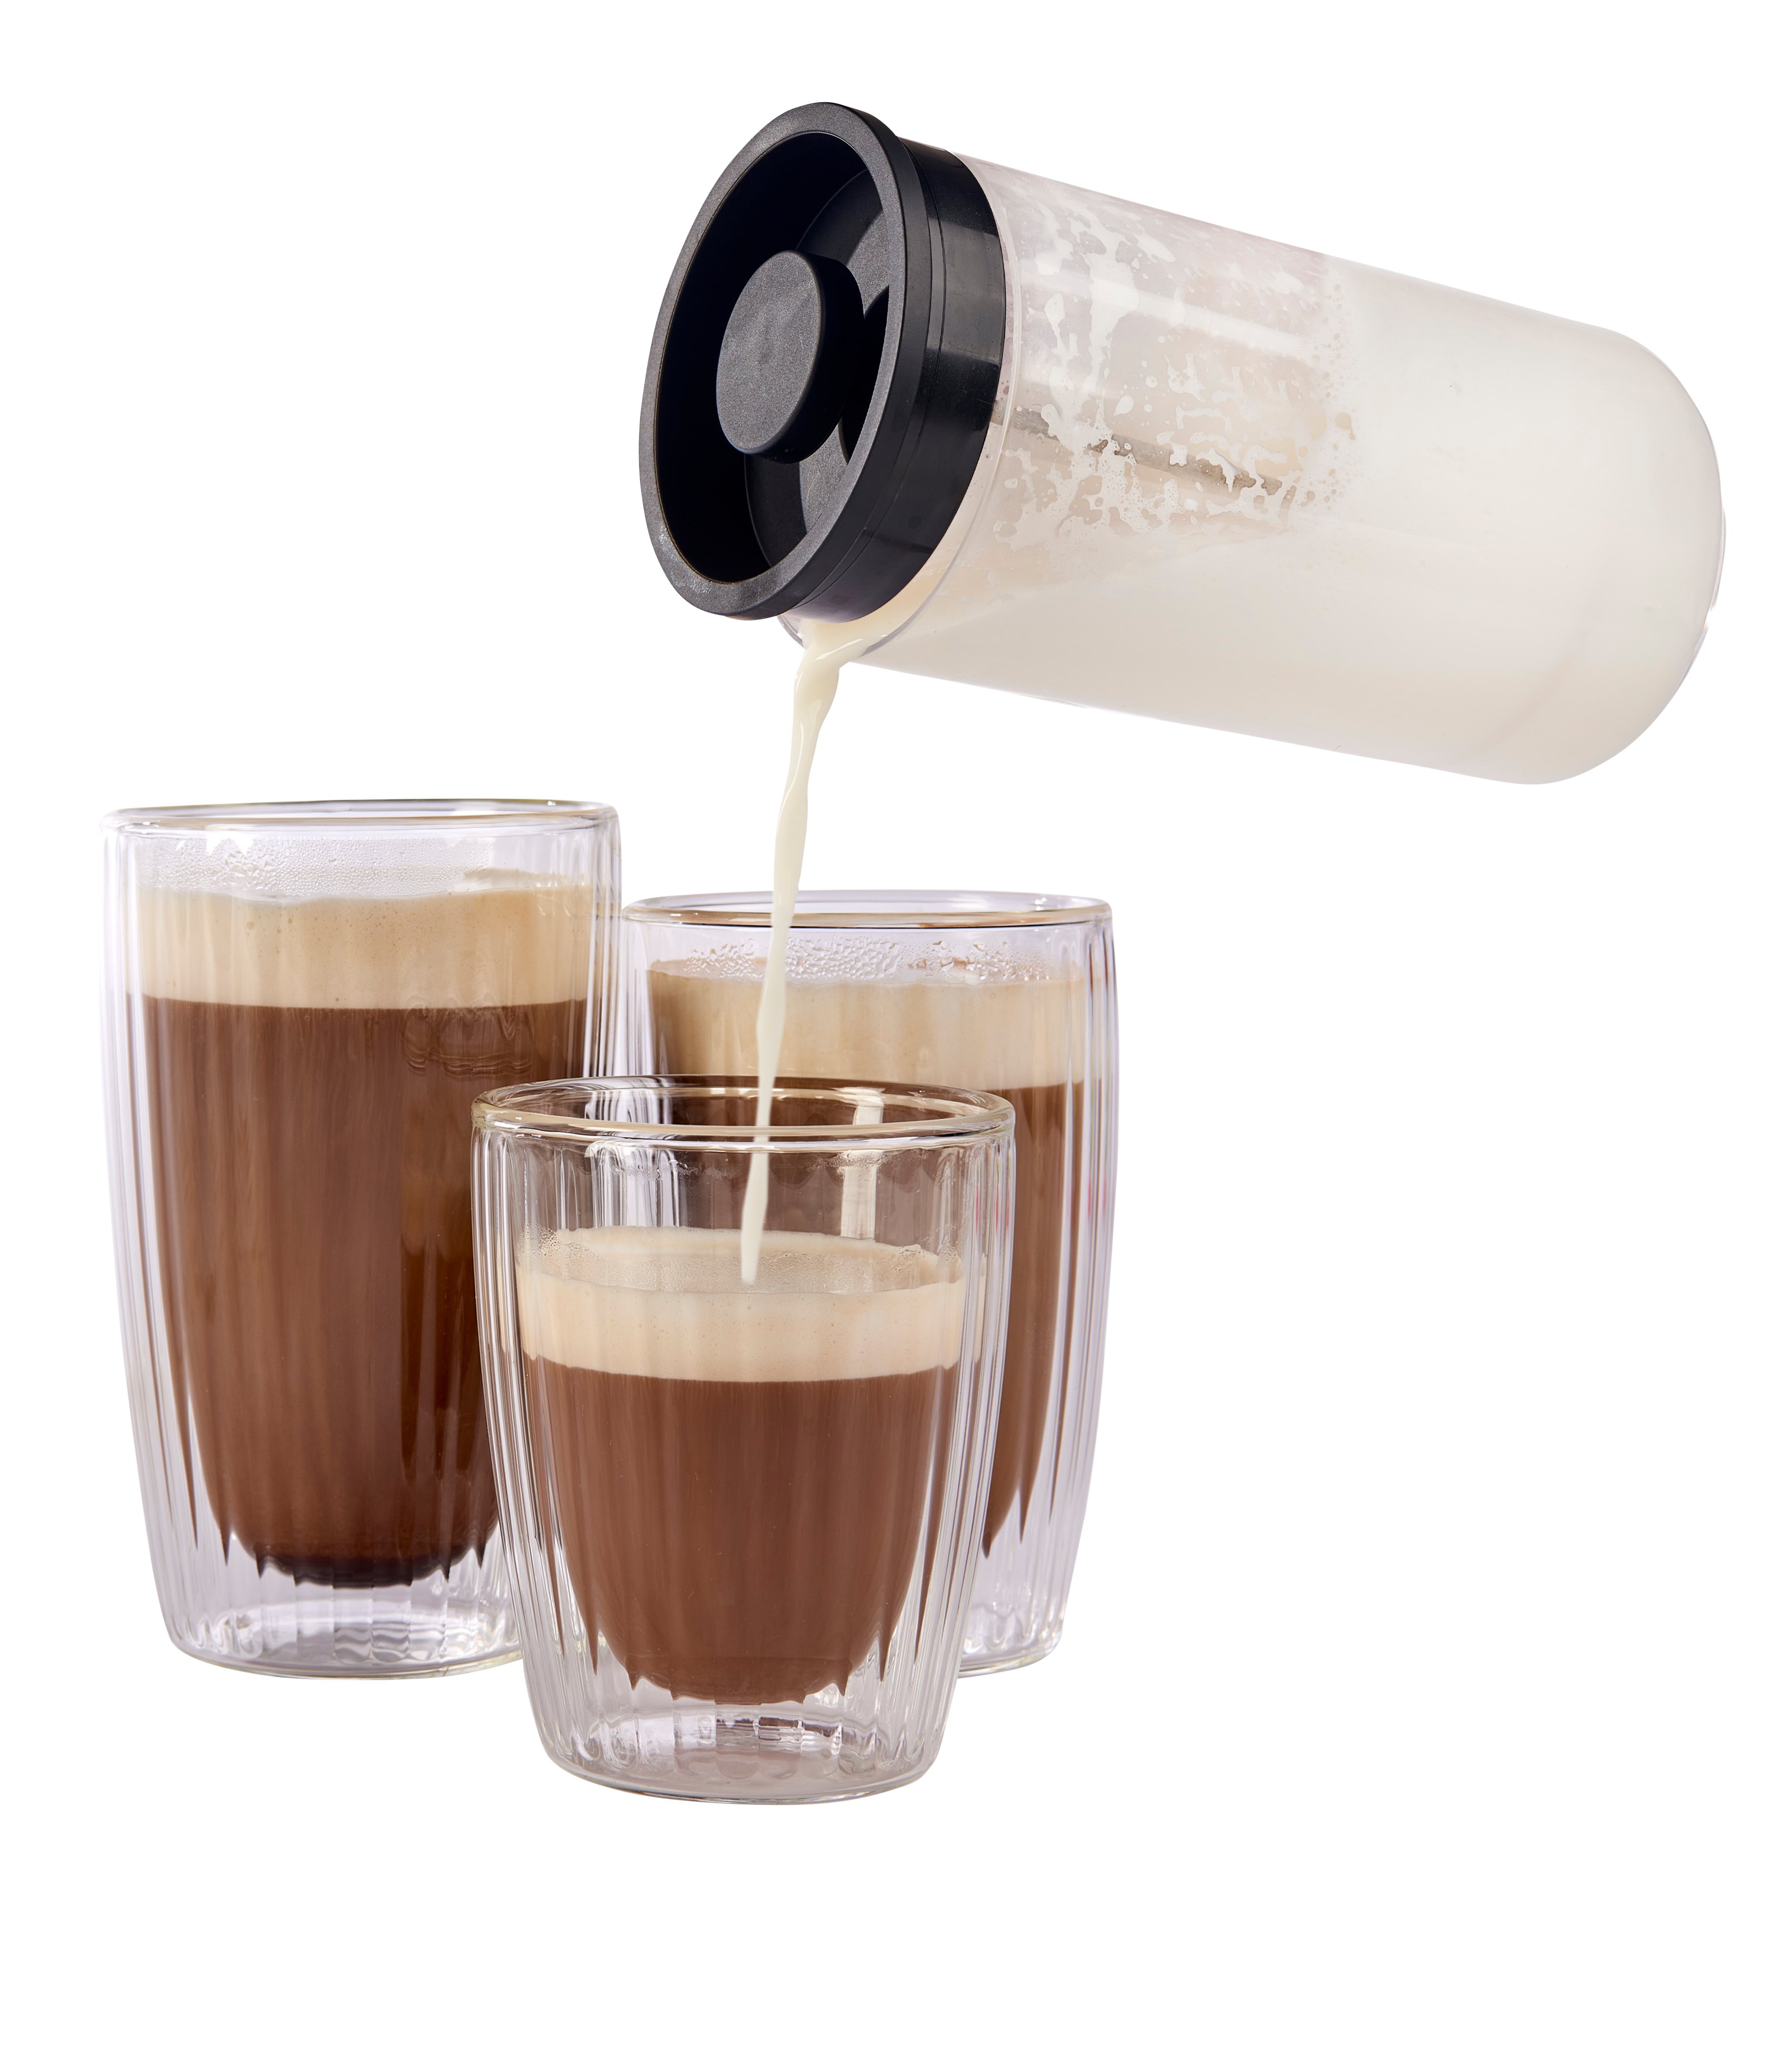 Casamira - ✨✨ Mousseur à lait manuel ✨✨ #home #kitchendesign #coffeetime  🚚Livraison à domicile et paiement à la livraison 🚚 ☎️Service client :  28048730 / 29300734